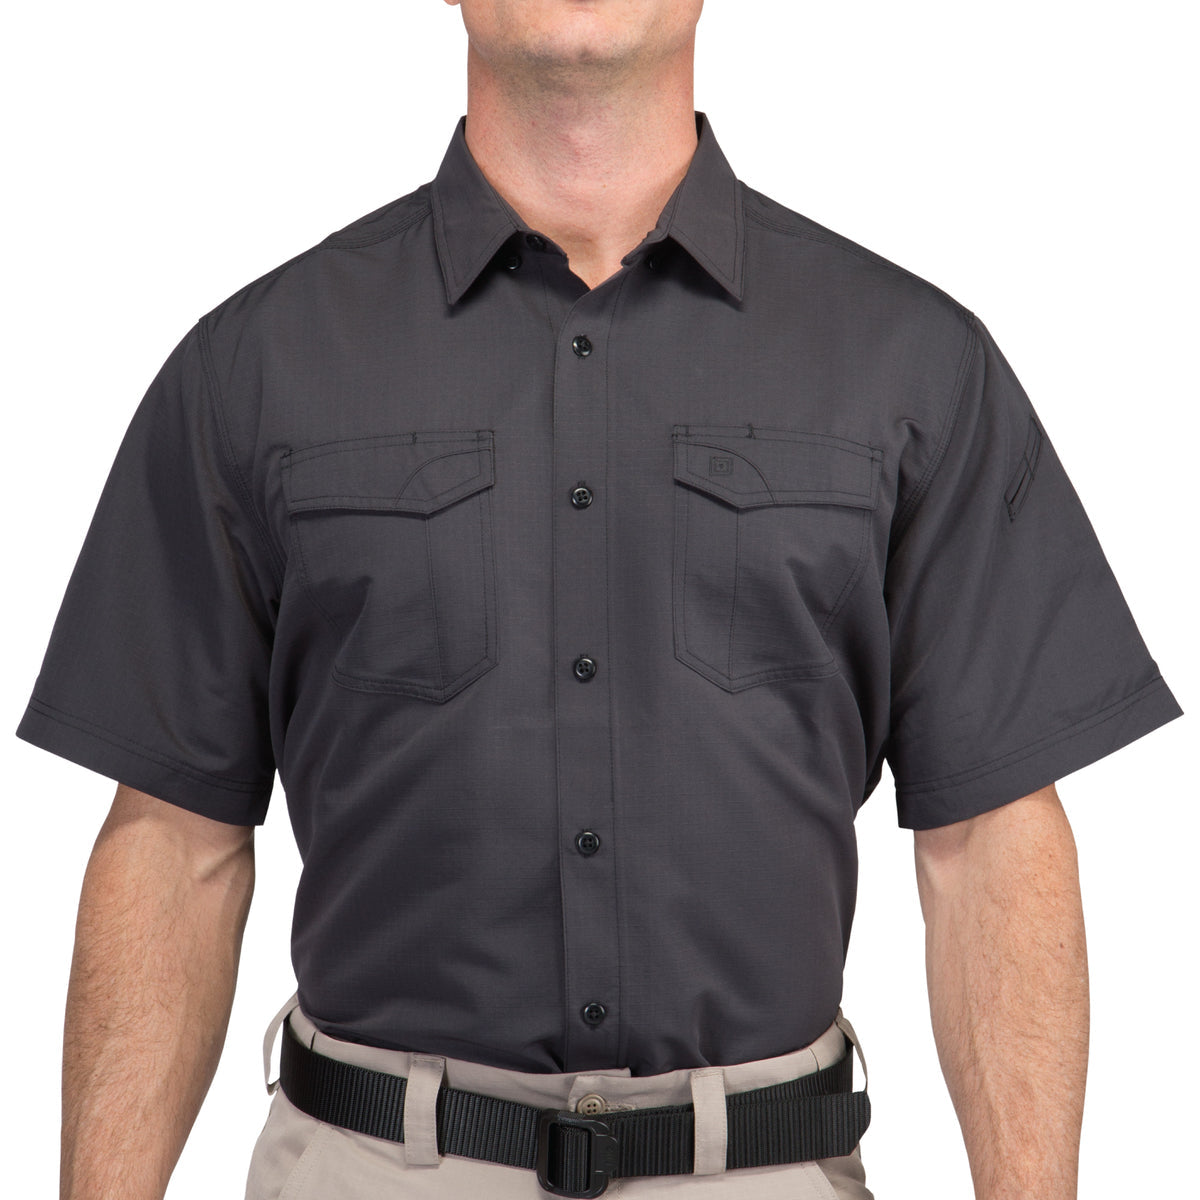 5.11 Tactical Fast-Tac Short-Sleeve Shirt Shirts 5.11 Tactical Small Charcoal Tactical Gear Supplier Tactical Distributors Australia